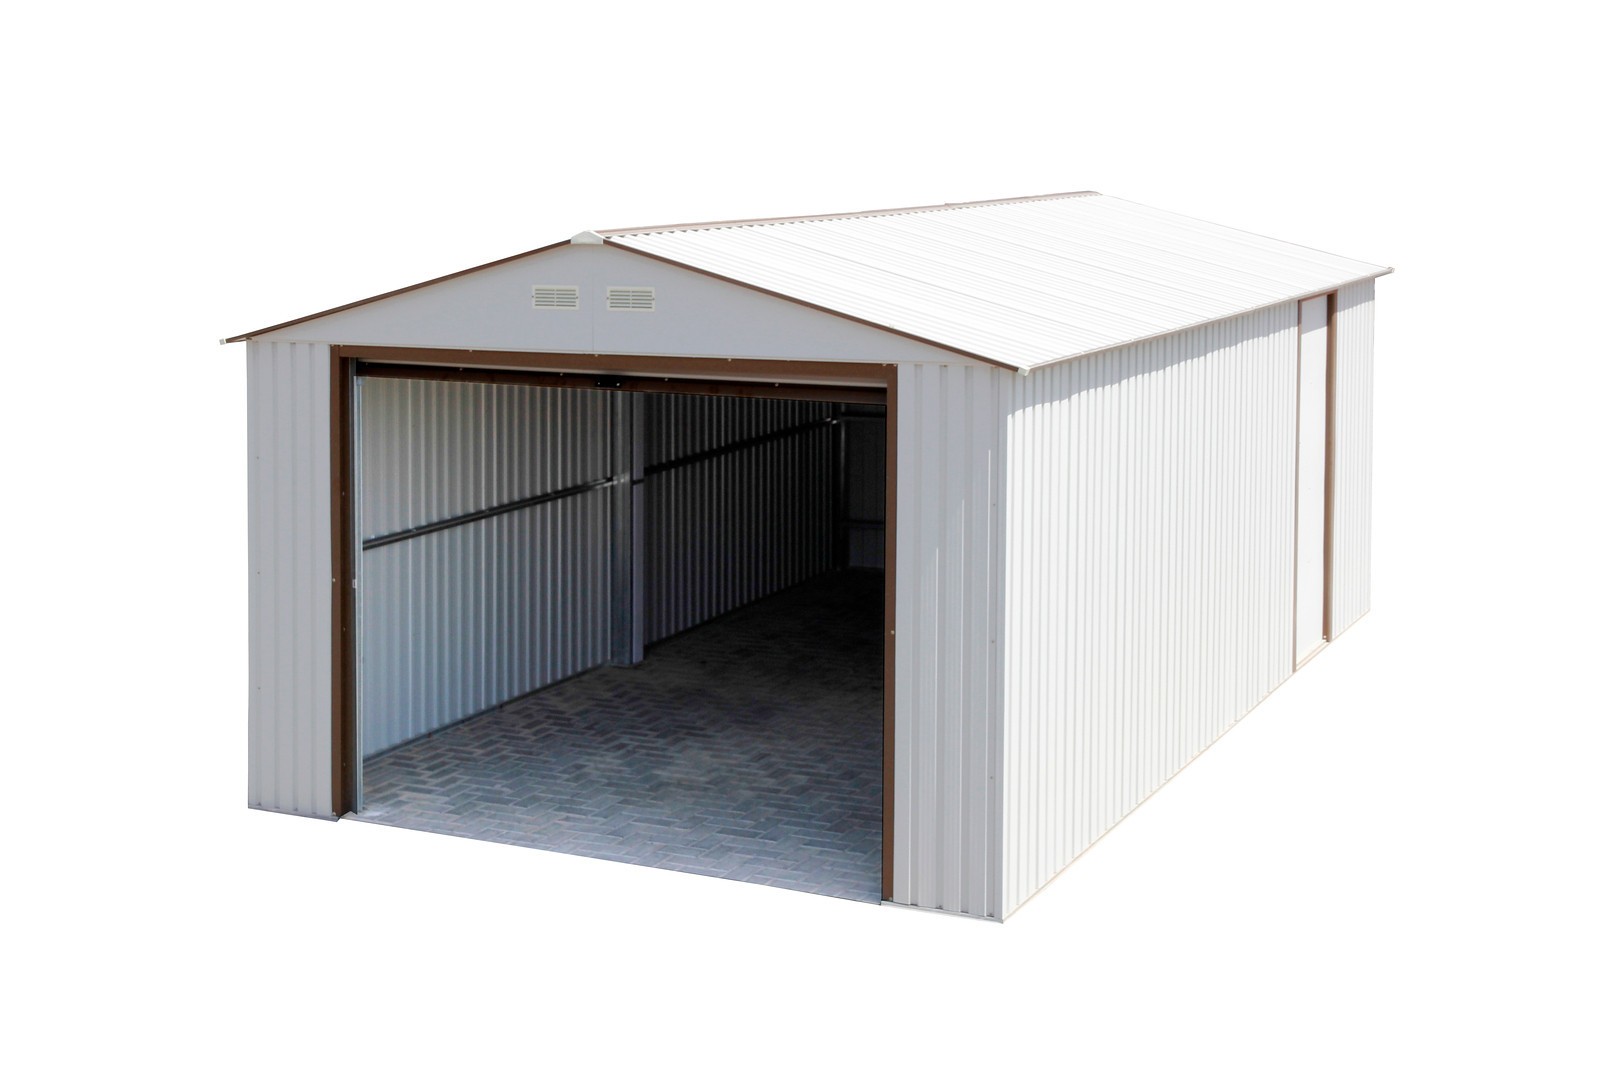 Duramax 55131 Metal Garage – 12' x 26' Metal Storage Shed – Off White with Brown Trim